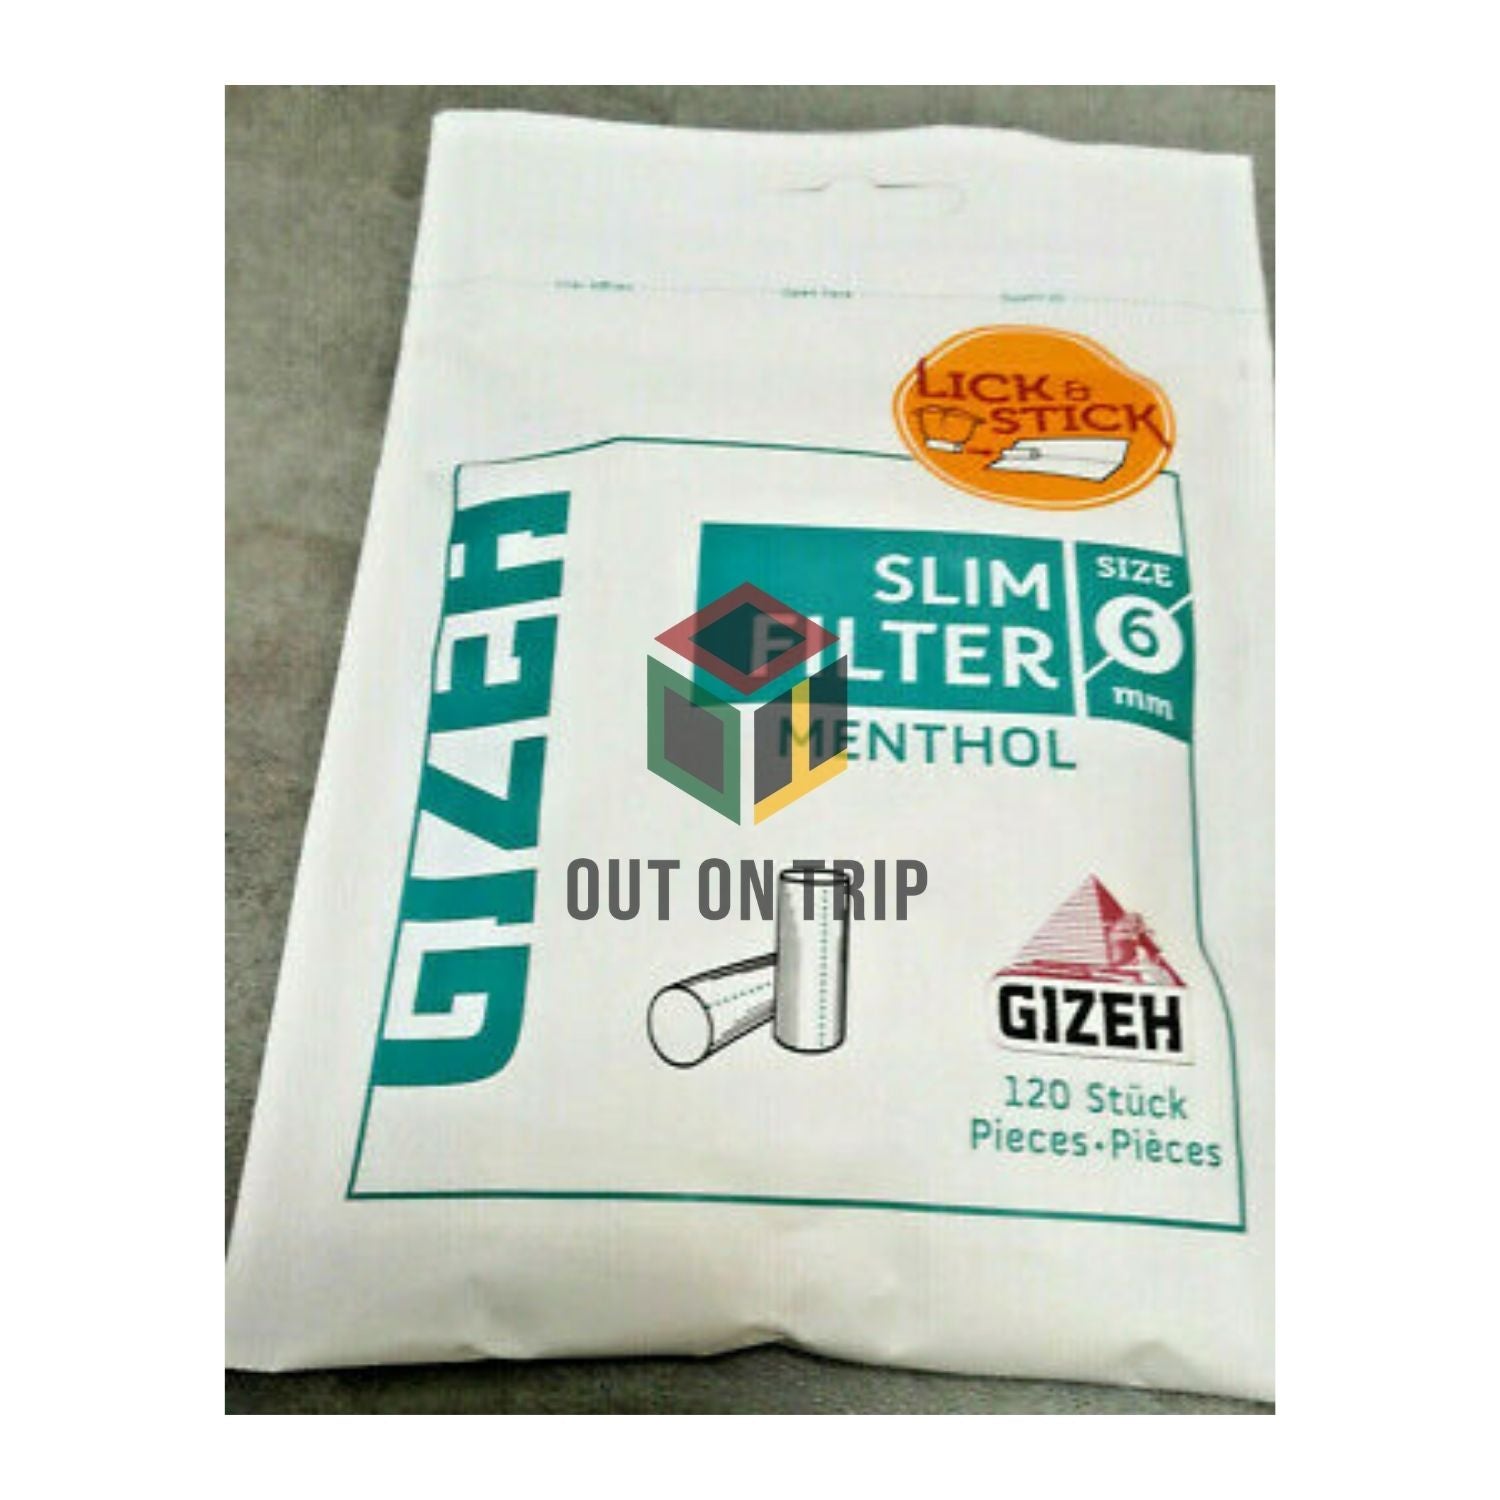 Gizeh Menthol Slim Filter 6mm - 120 Tips